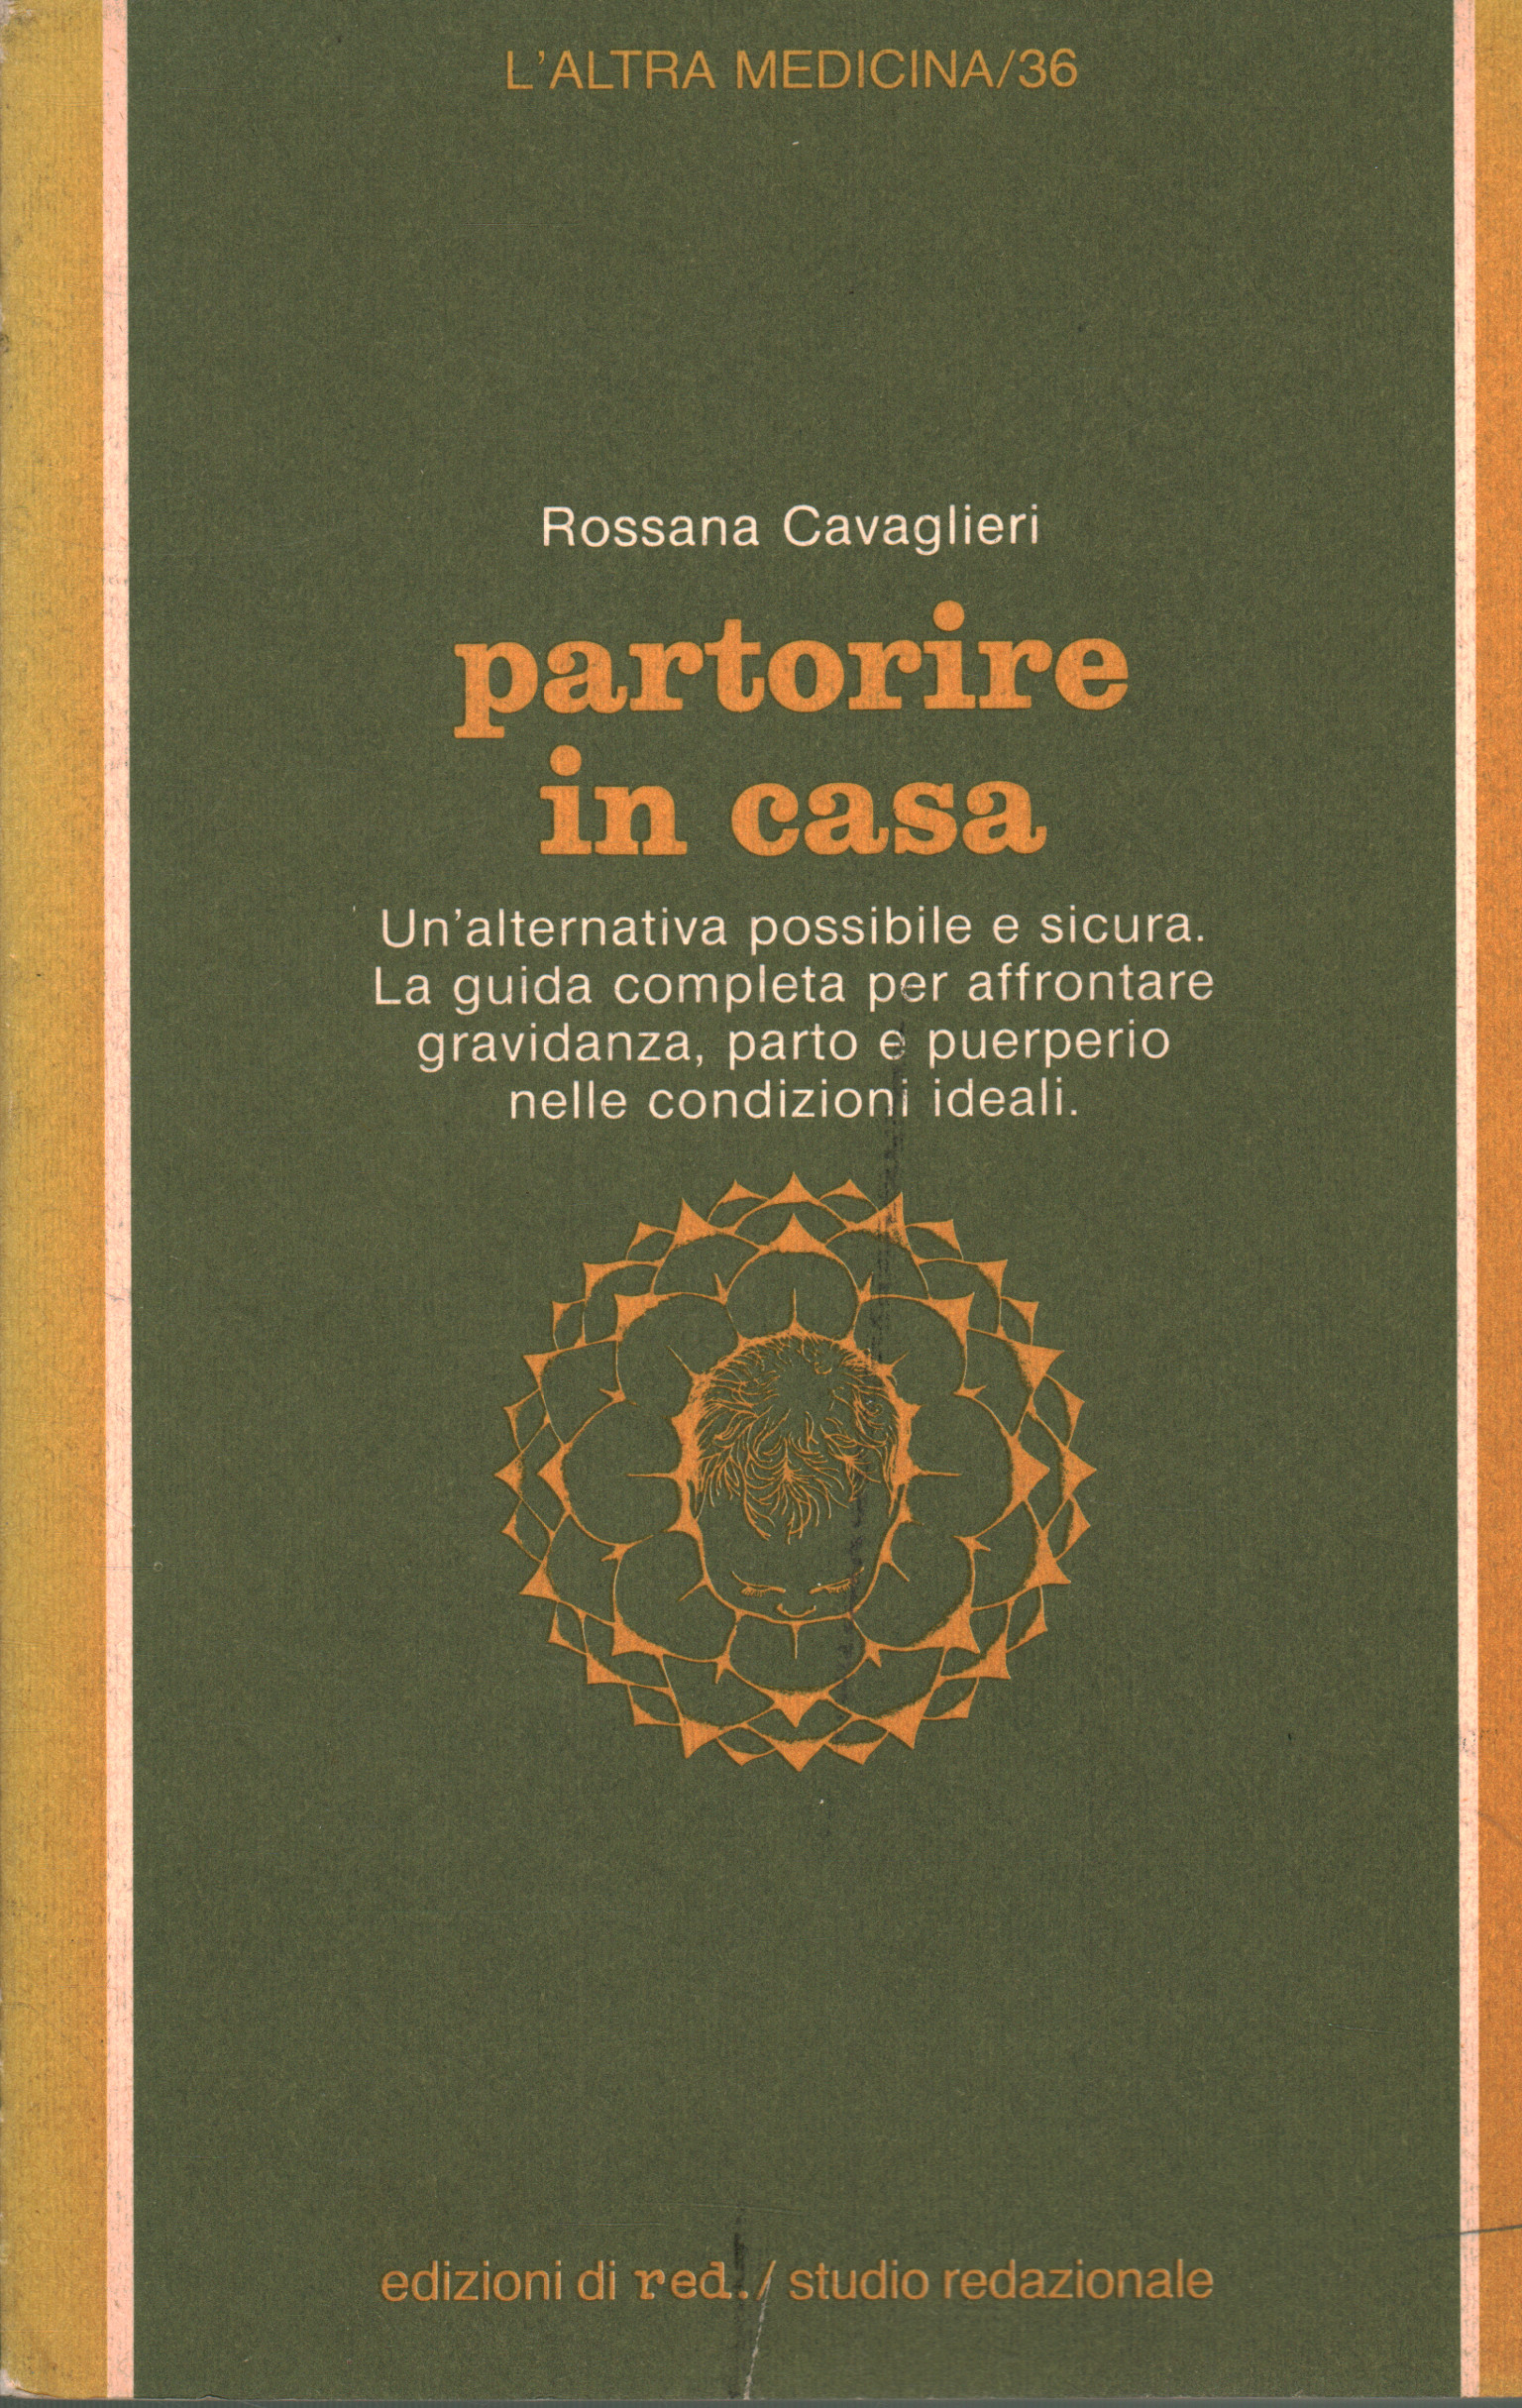 Rossana Cavaglieri gebiert zu Hause